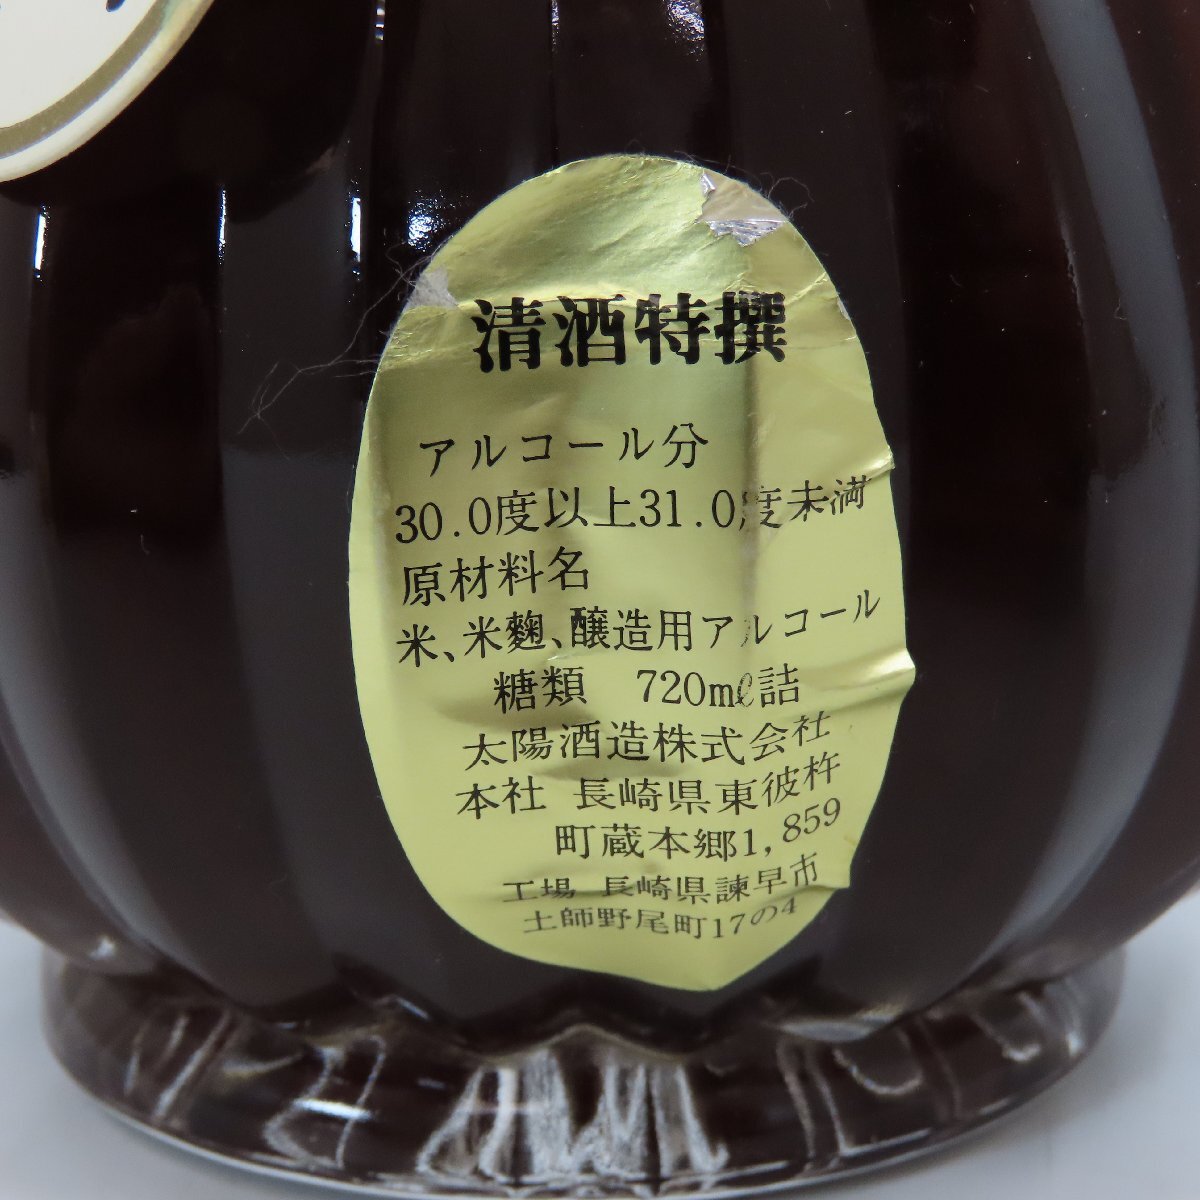 7194-60 Yamaguchi префектура ограничение рассылка редкий солнце sake структура .. ... старый sake 2 10 год предмет 20 год Kiyoshi sake изменение штекер нераспечатанный 720ml/30%